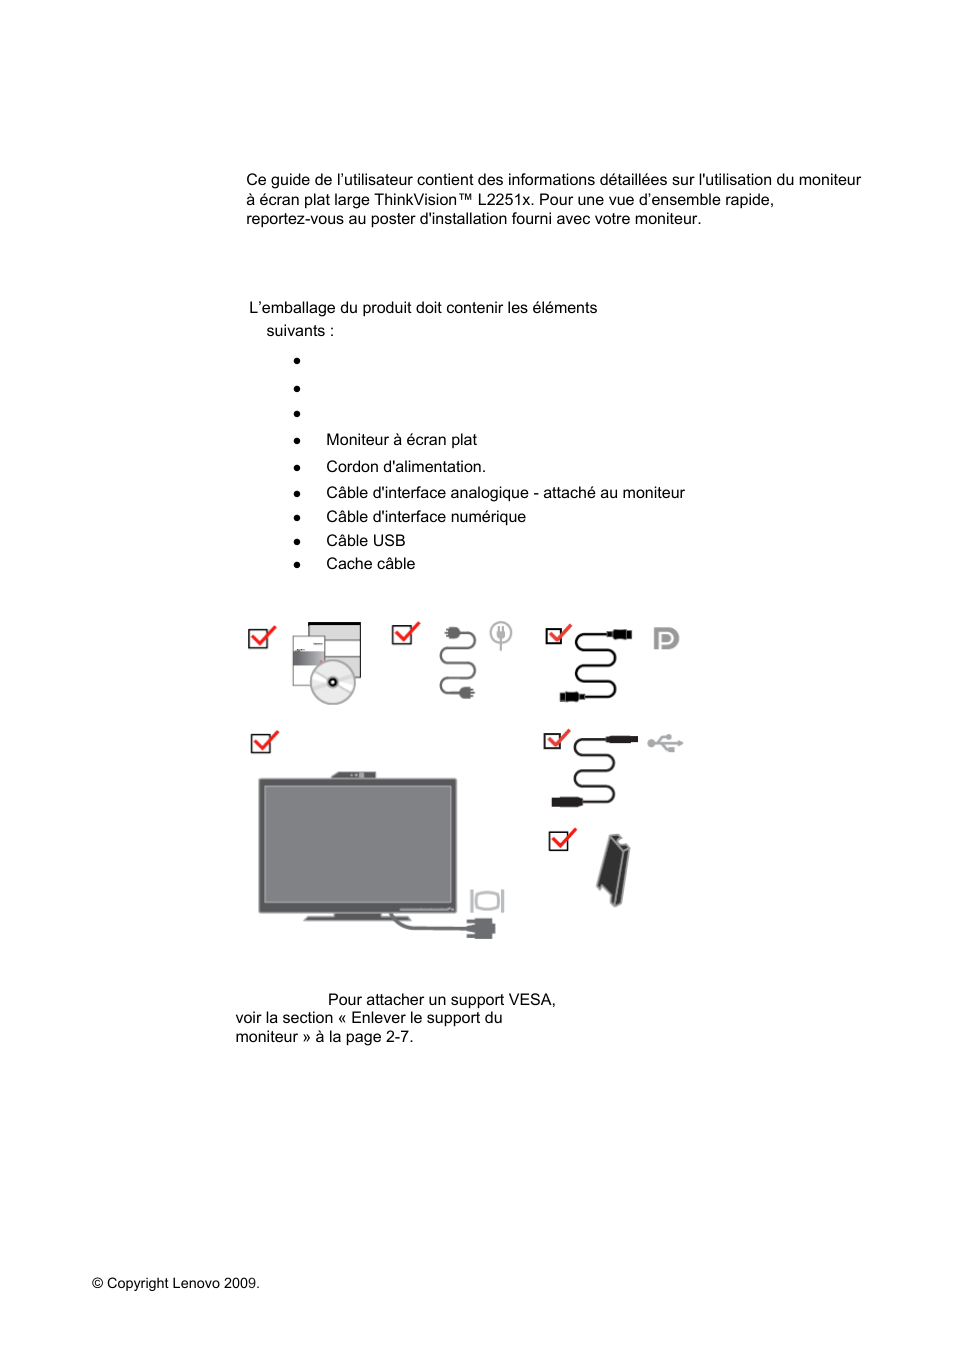 Chapitre 1. prise en main, Livraison contenu | Lenovo ThinkVision L2251x Wide 22in LCD Monitor Manuel d'utilisation | Page 6 / 38